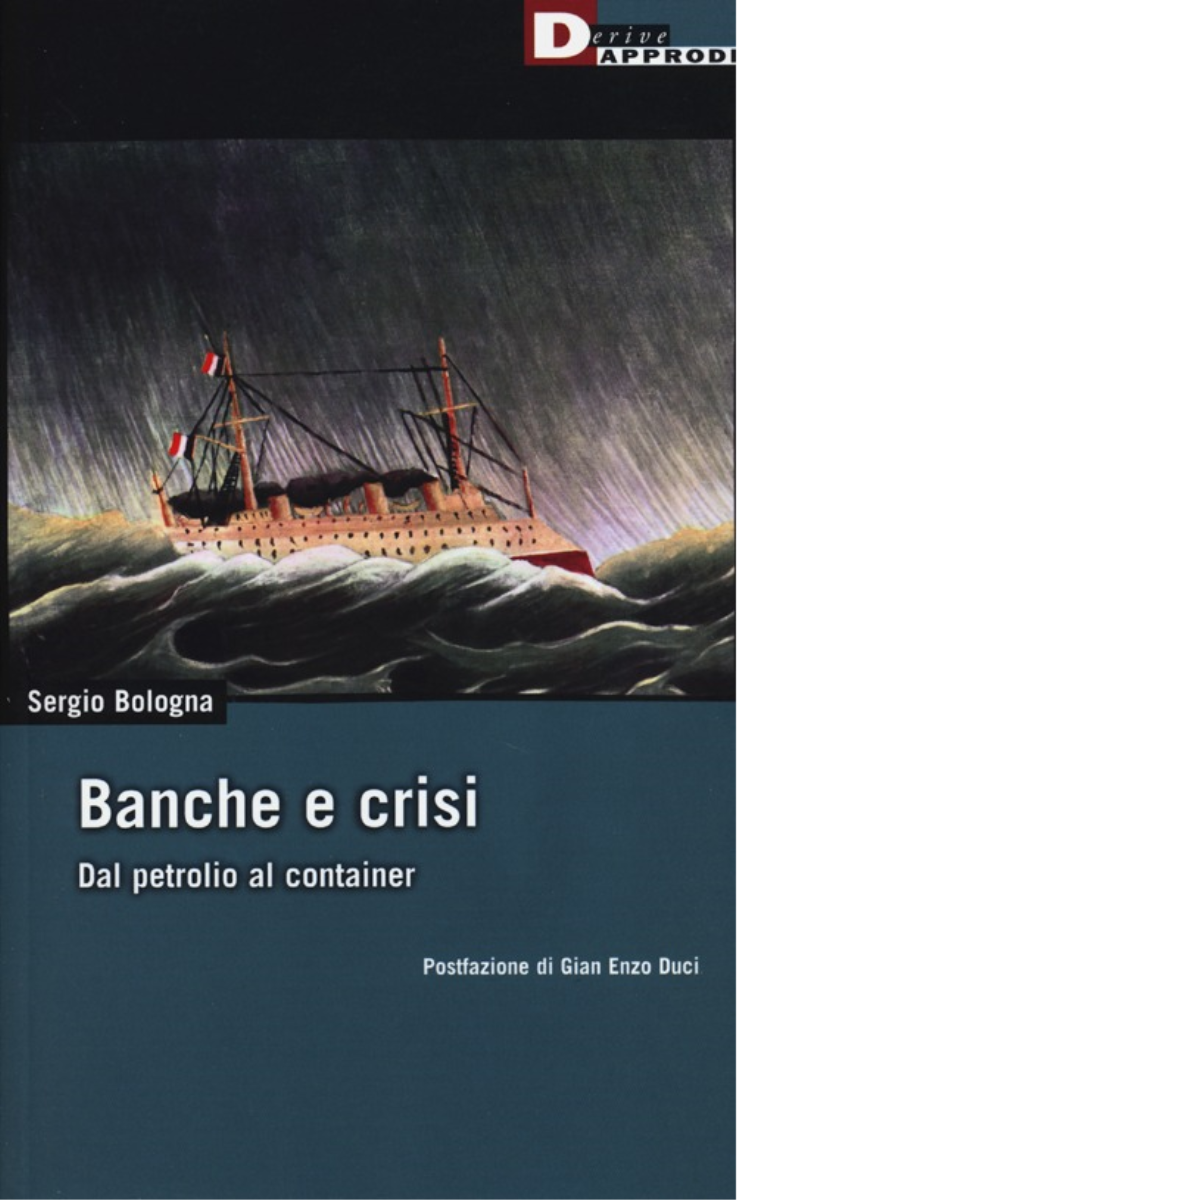 BANCHE E CRISI. di SERGIO BOLOGNA - DeriveApprodi editore, 2014